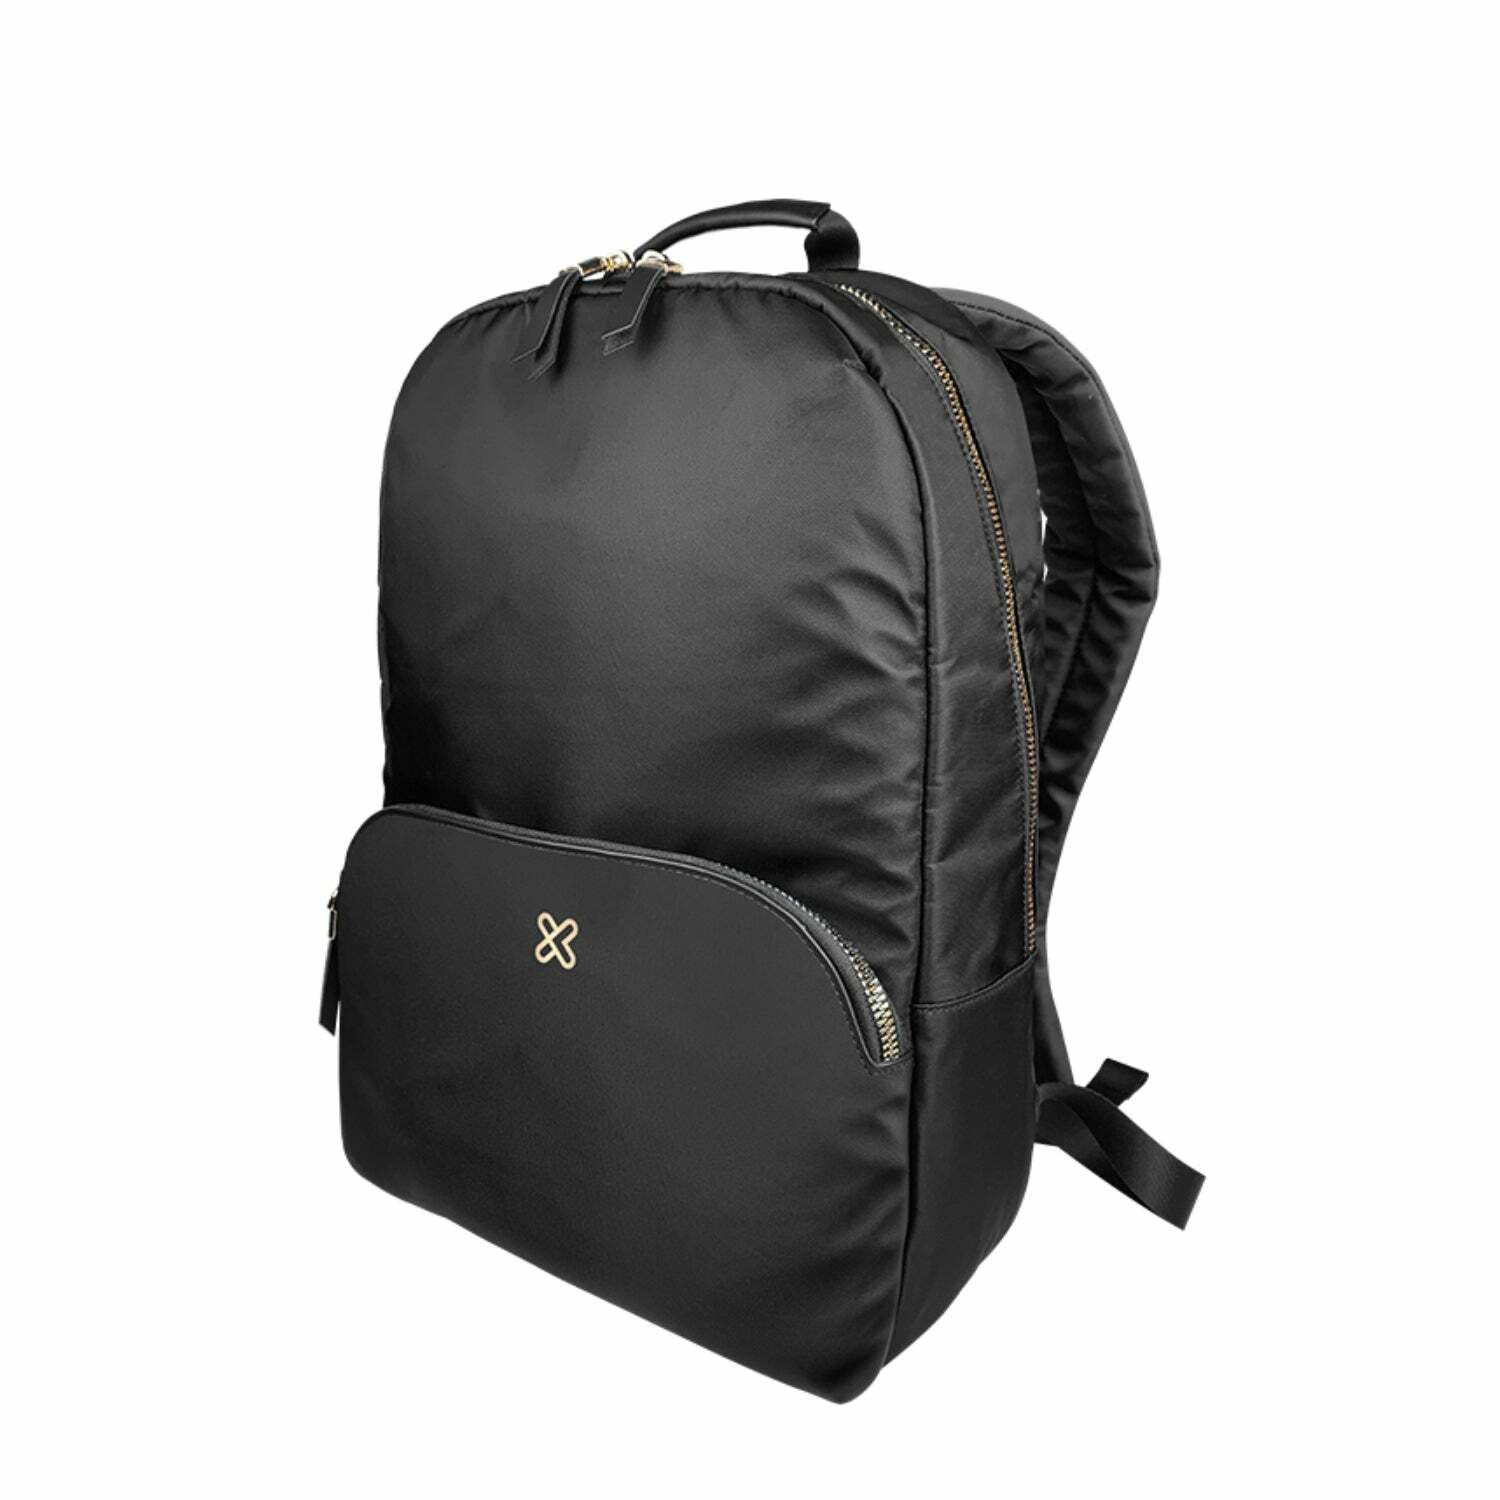 Klip Xtreme - Aberdeen KNB-456 Laptop Backpack, Black